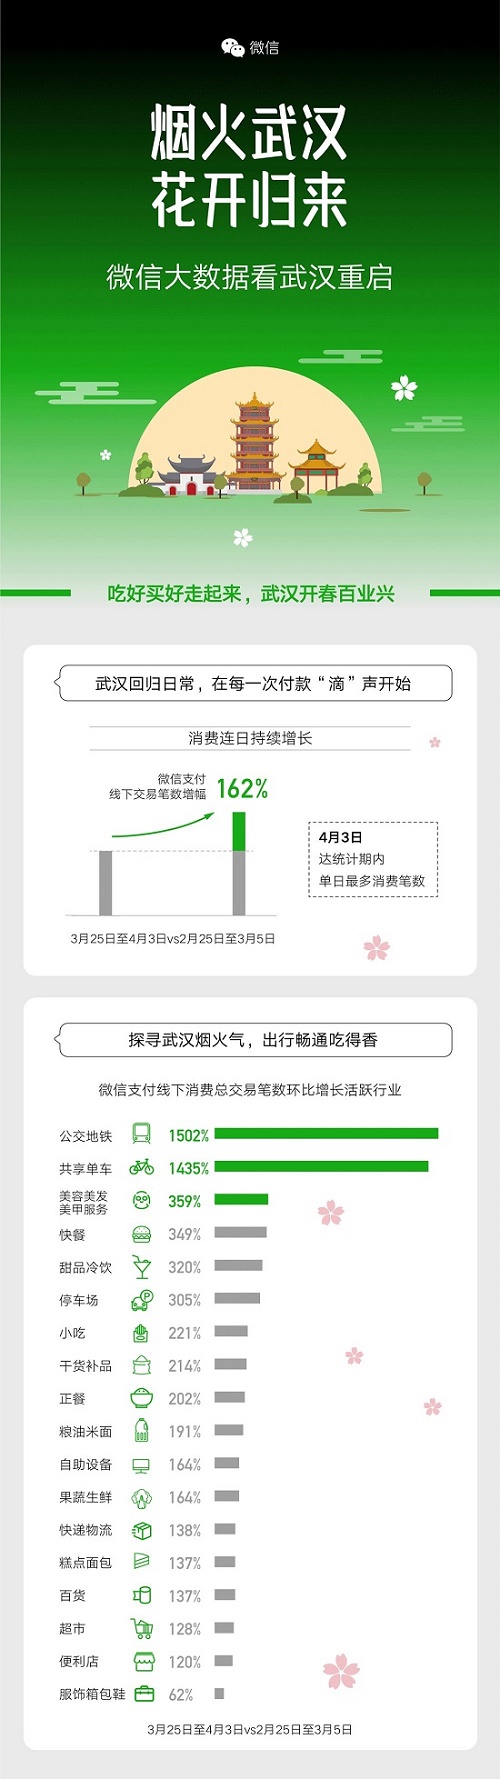 3.25-4.3期间 武汉微信支付线下交易笔数增幅高达162%